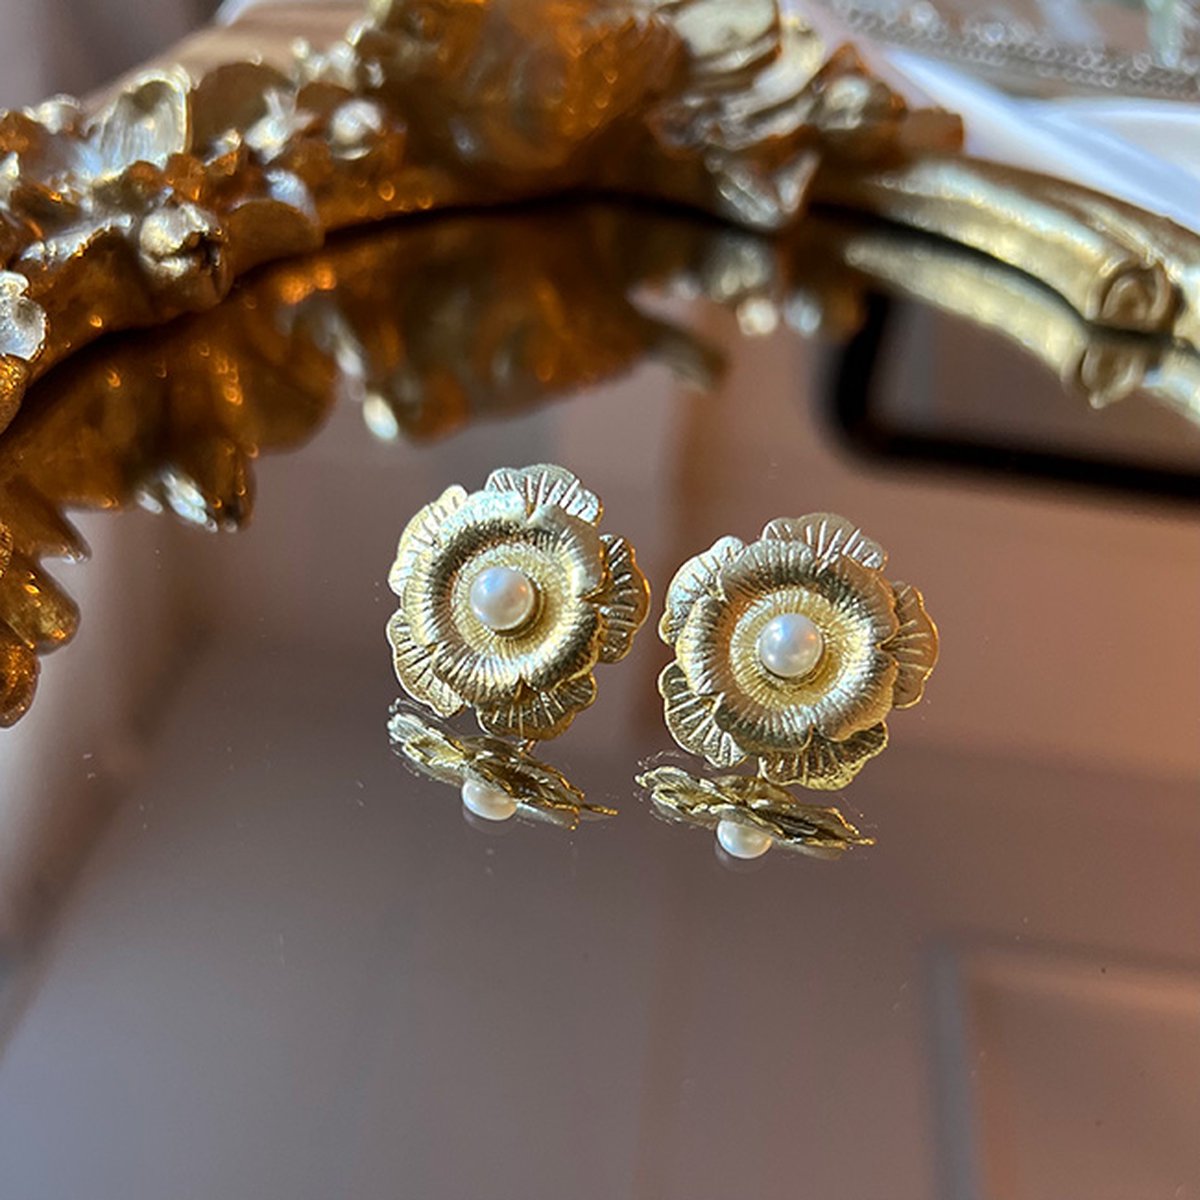 Le Rêve Amsterdam Oorbellen met bloem en parel - goud op zilver- oorknoppen